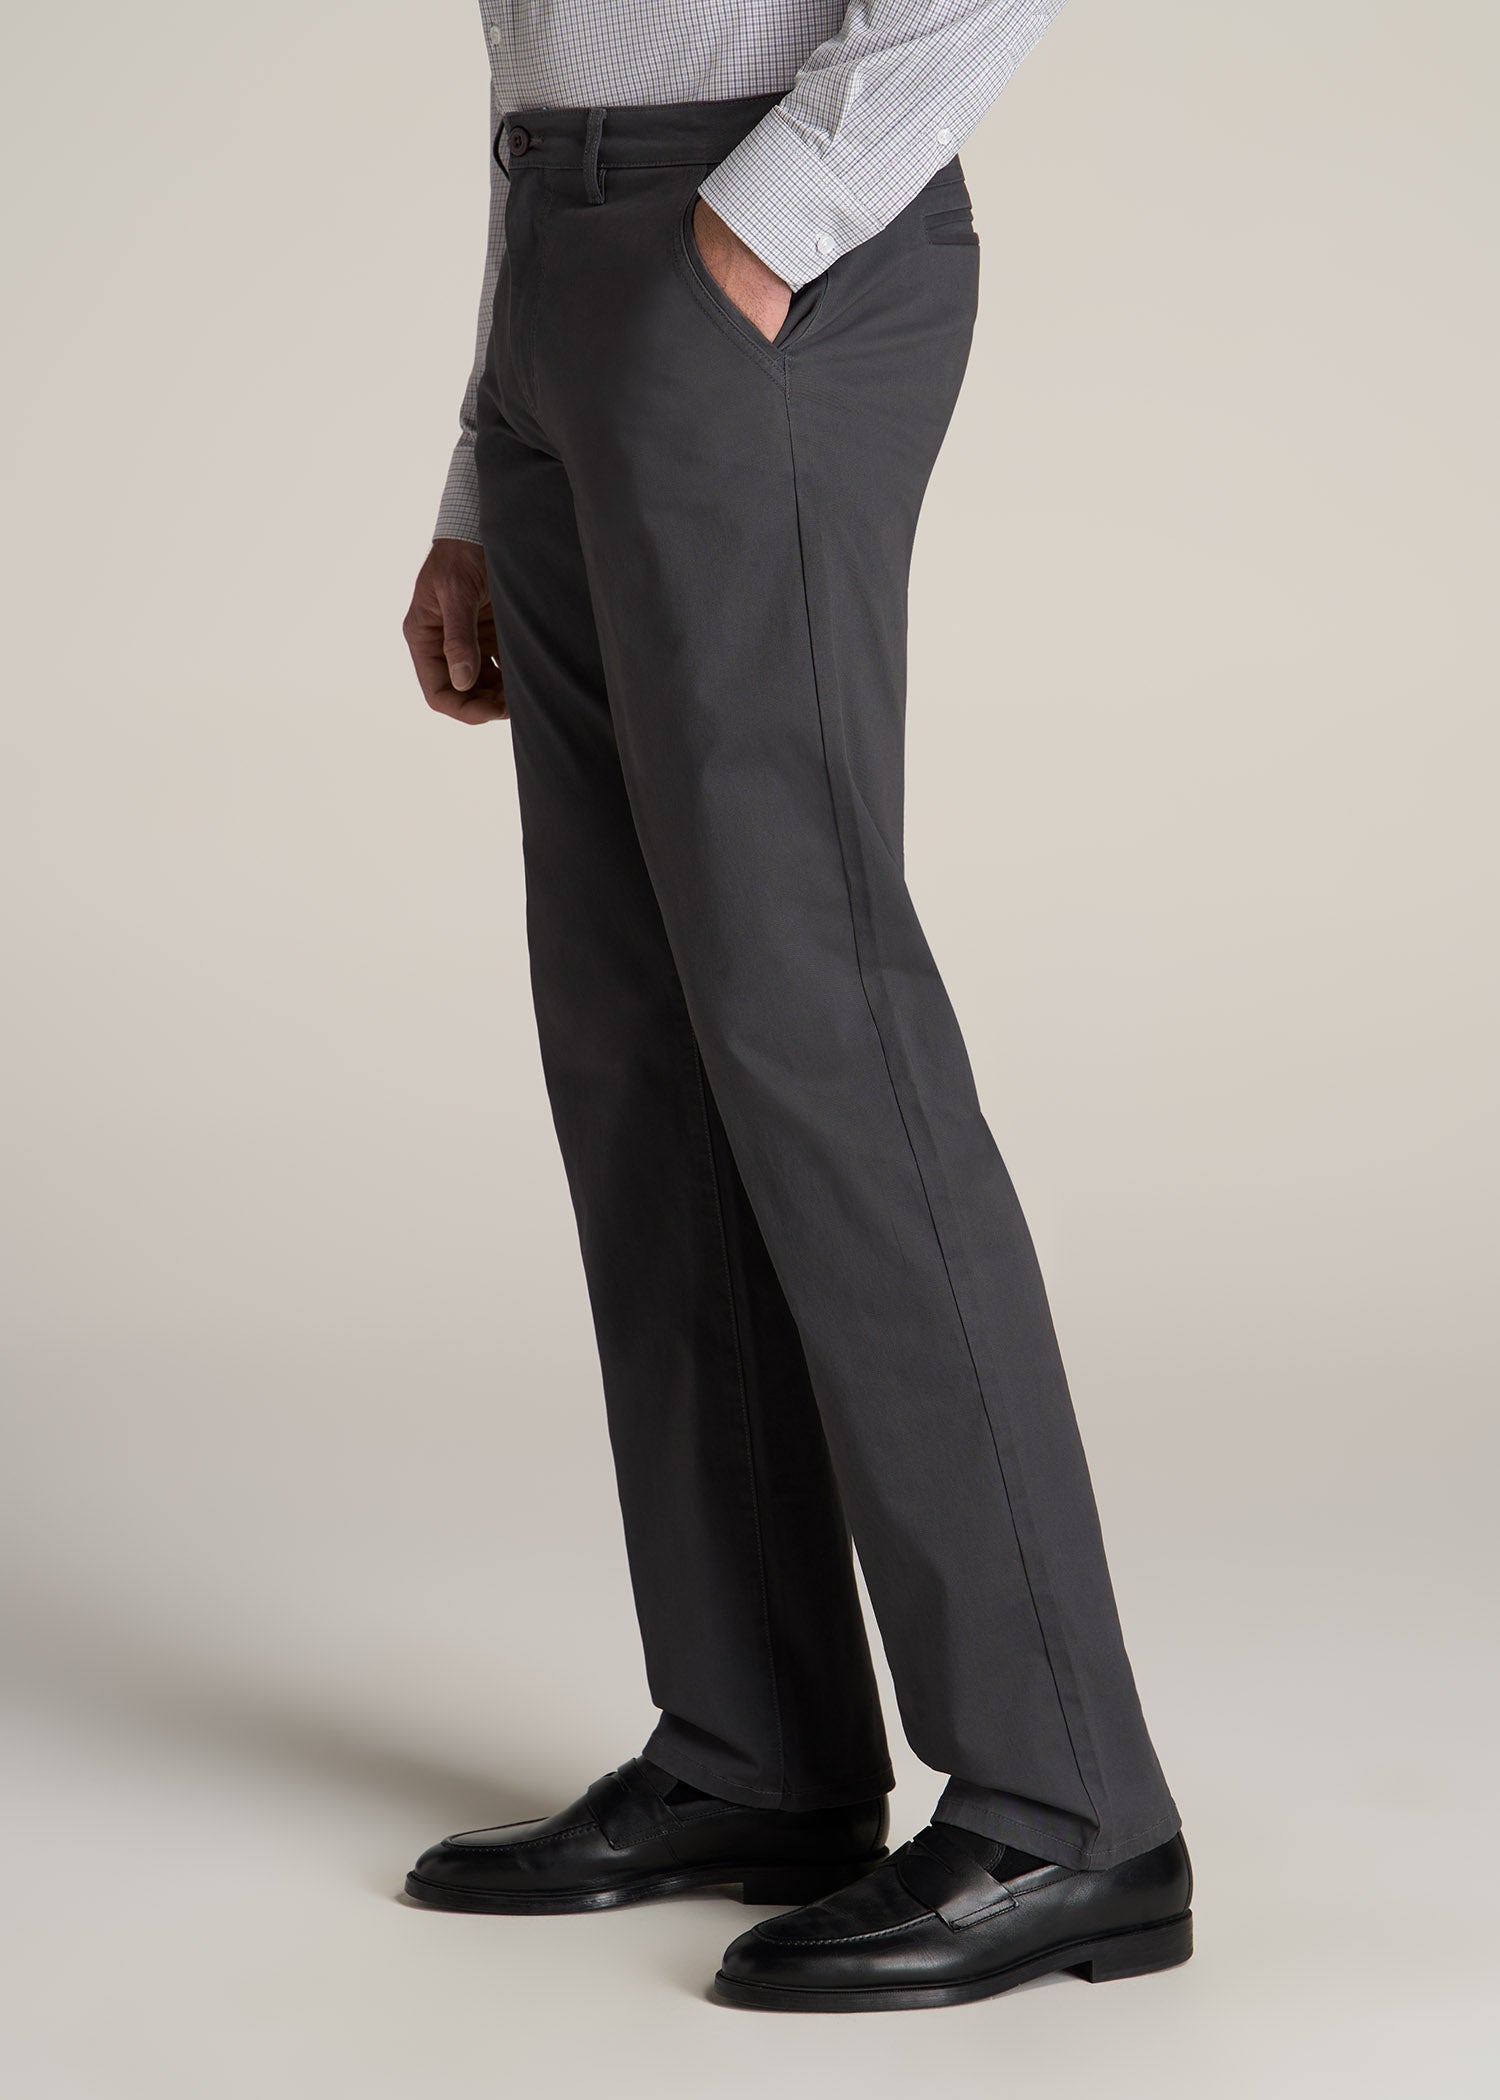 Cottonking : Best Cotton Trousers for men | Men's Casual Pants